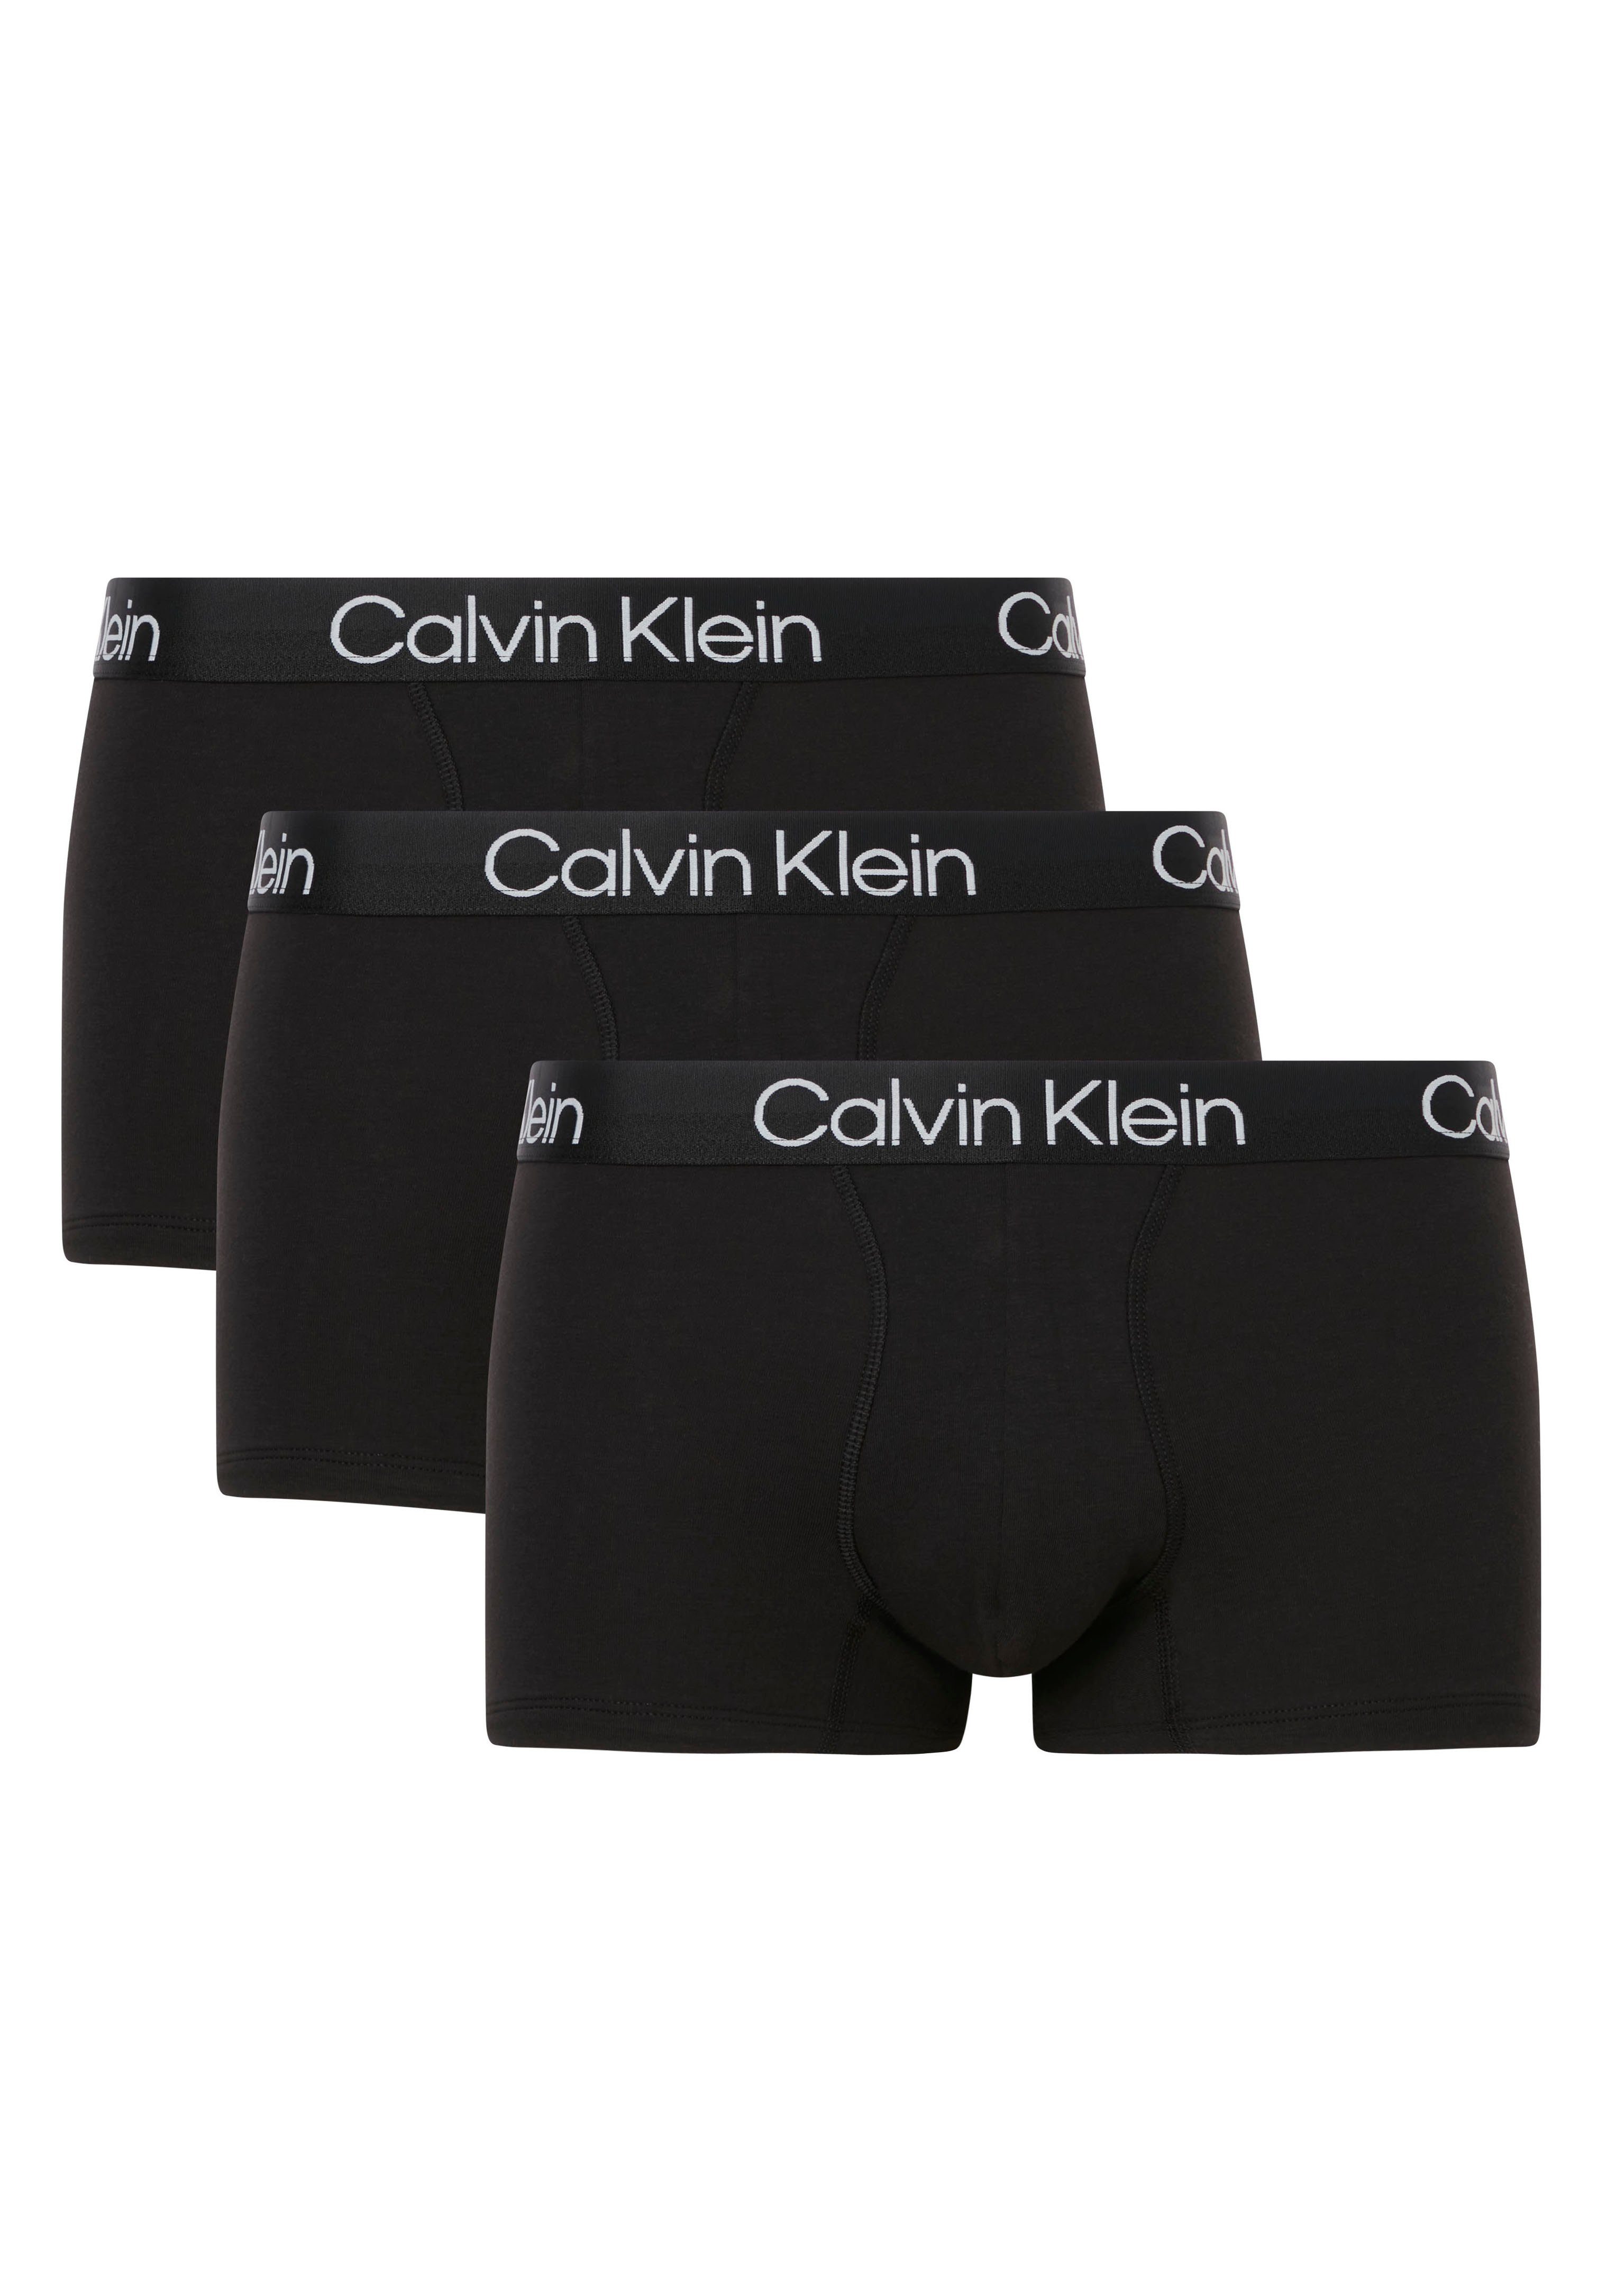 Wäsche/Bademode Boxershorts Calvin Klein Boxer (3 Stück) mit Markenlogo im Bund